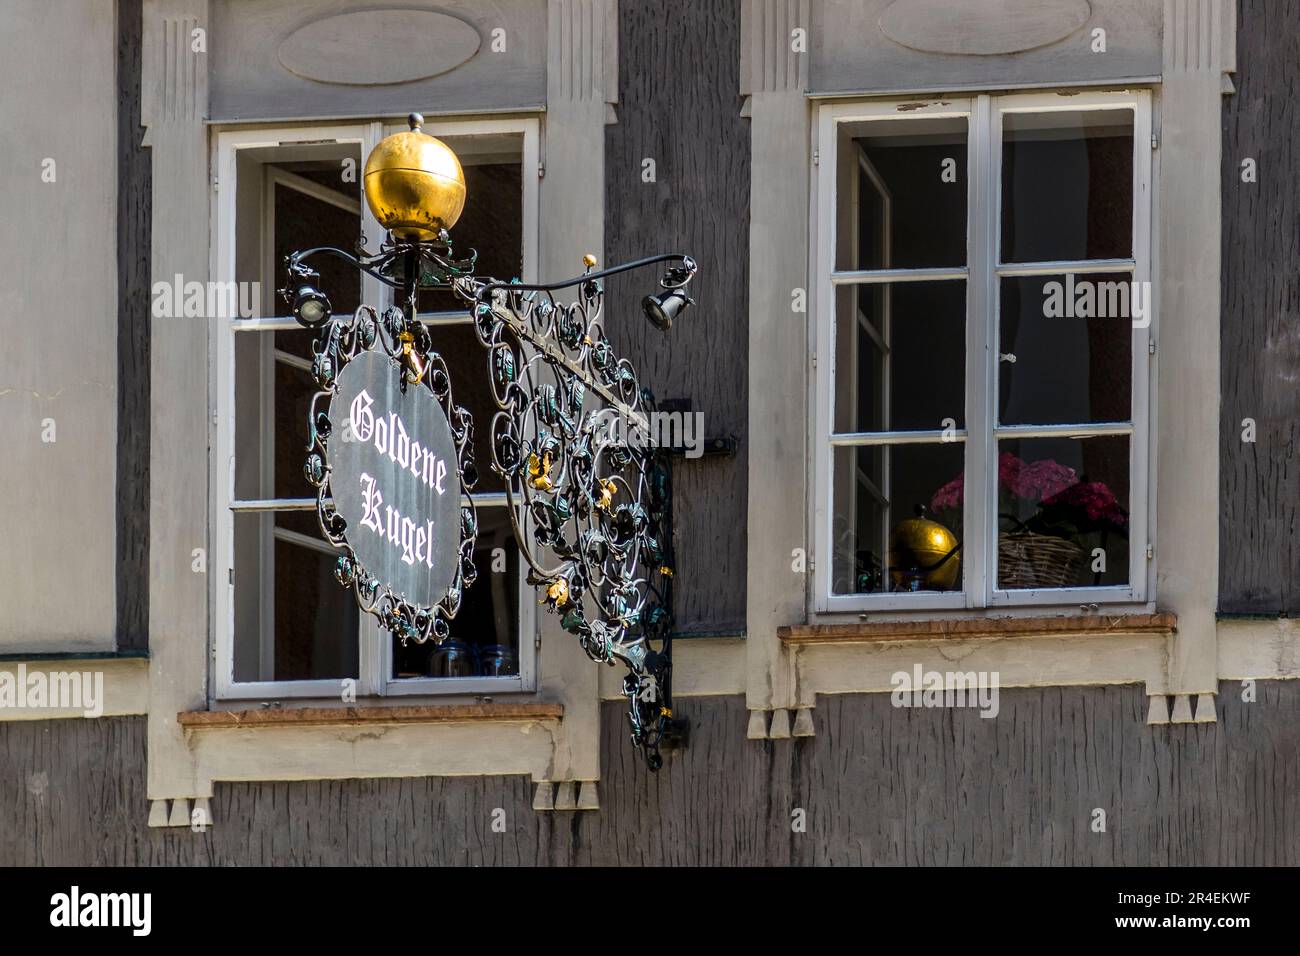 The Goldene Kugel (Bankhammer) Inn at Judengasse 3, Salzburg, Austria Stock Photo